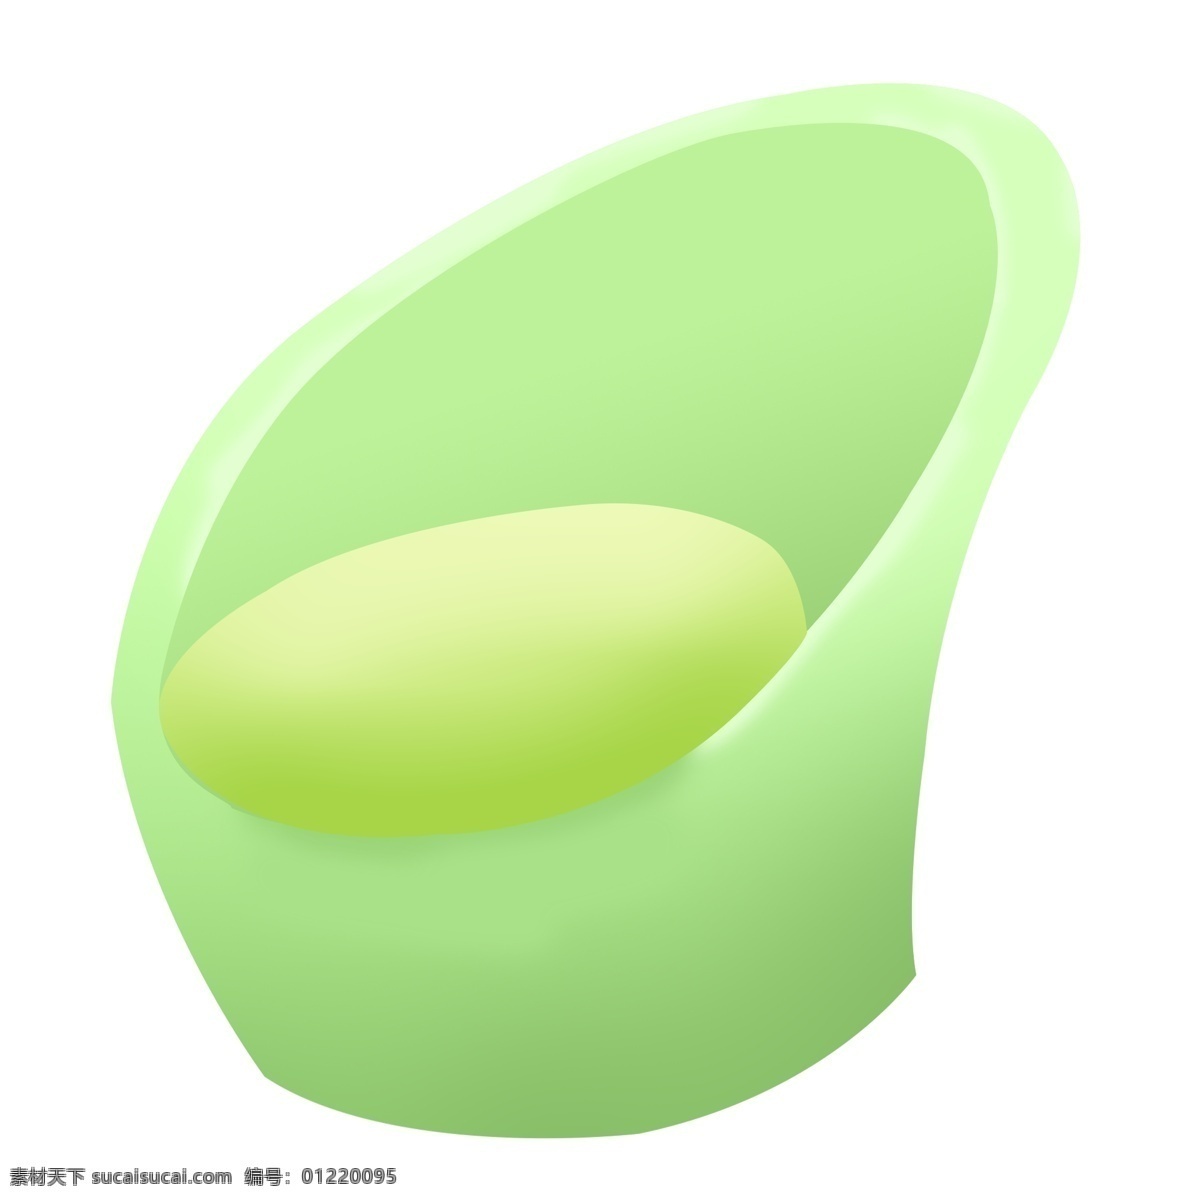 绿色 椅子 沙发 插画 绿色的椅子 卡通插画 椅子插画 家具插画 座椅插画 木质椅子 绿色的沙发